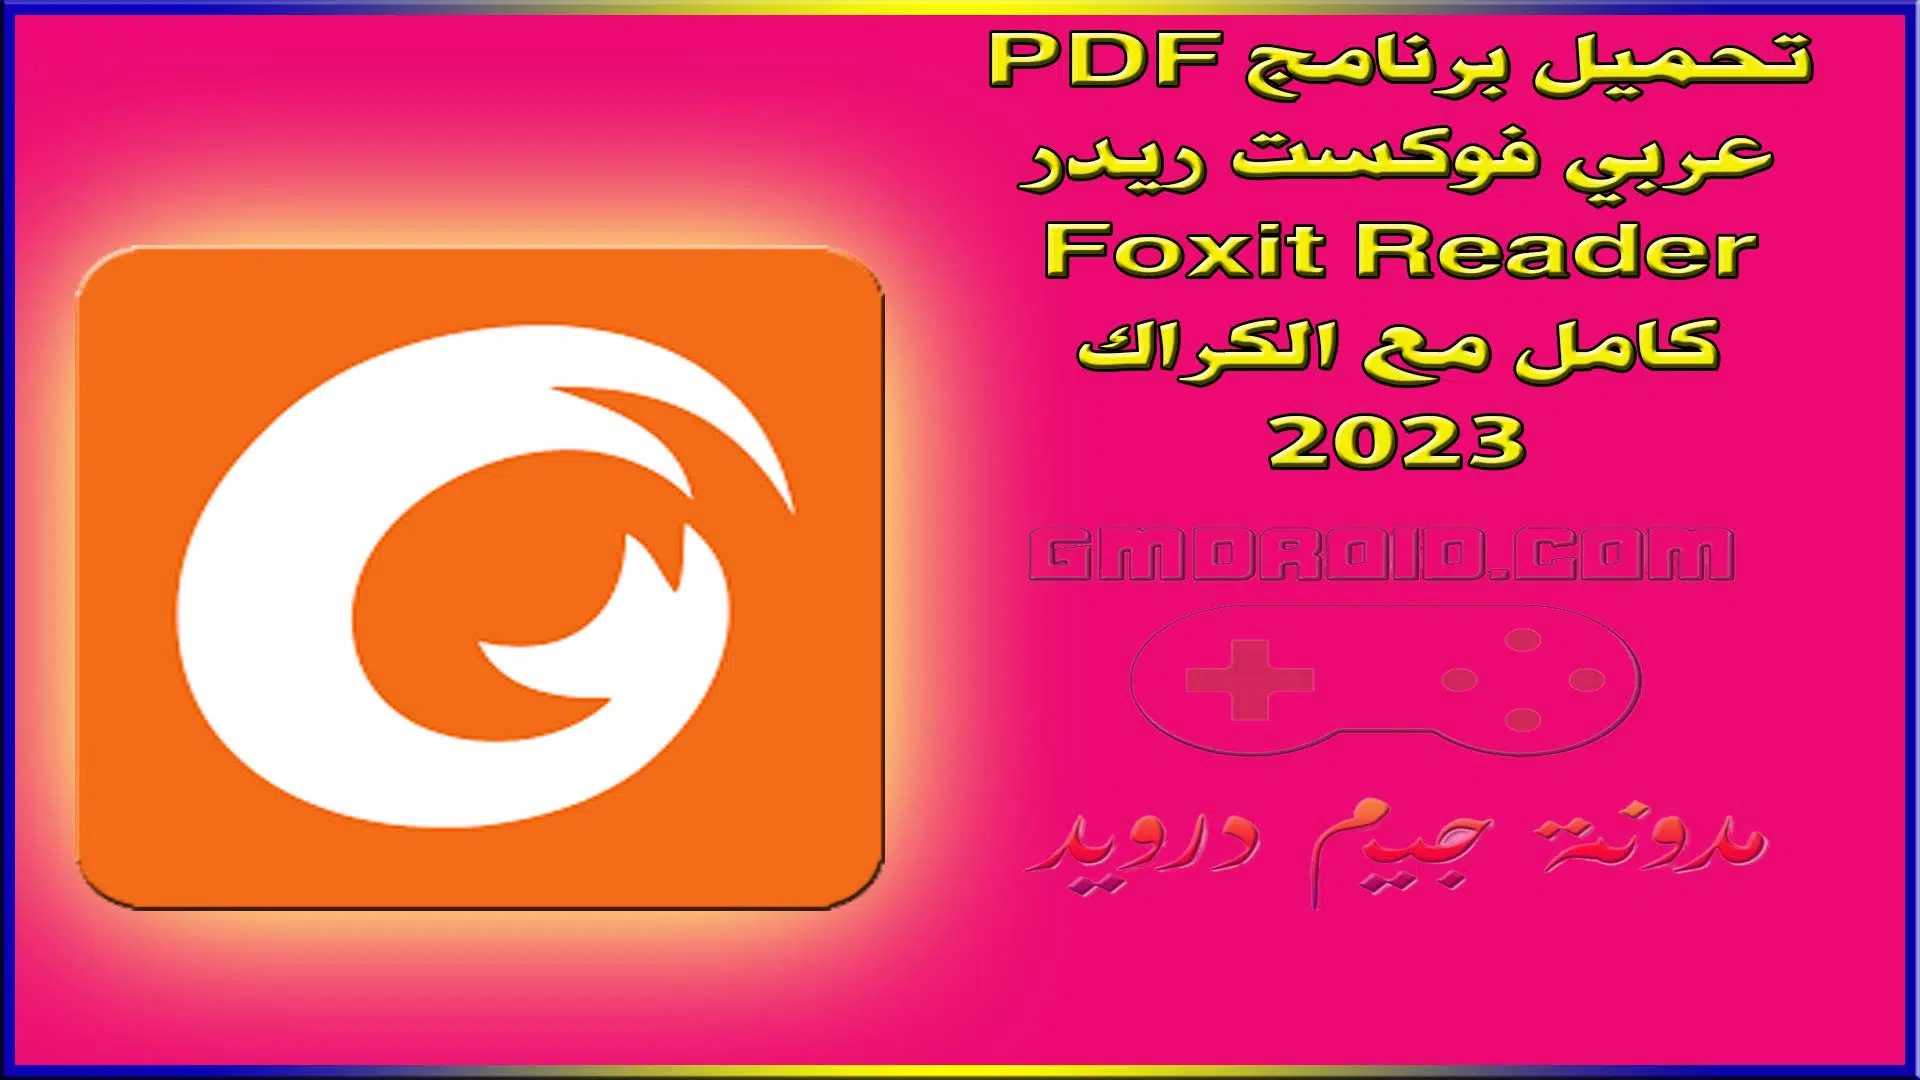 تحميل برنامج PDF عربي فوكست ريدر Foxit Reader كامل مع الكراك 2023